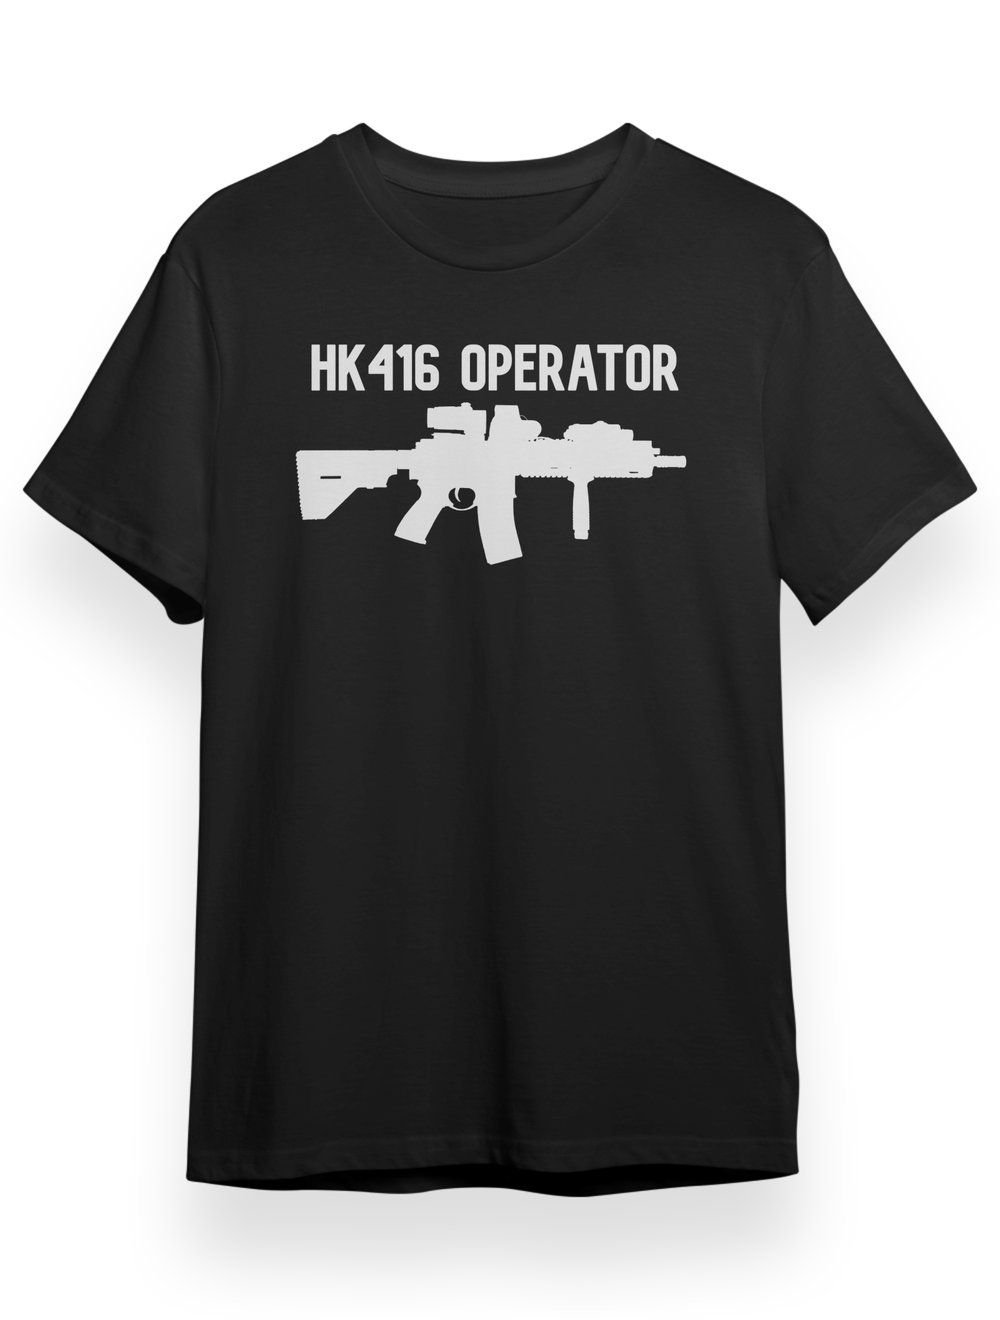 HK416 OPERATOR